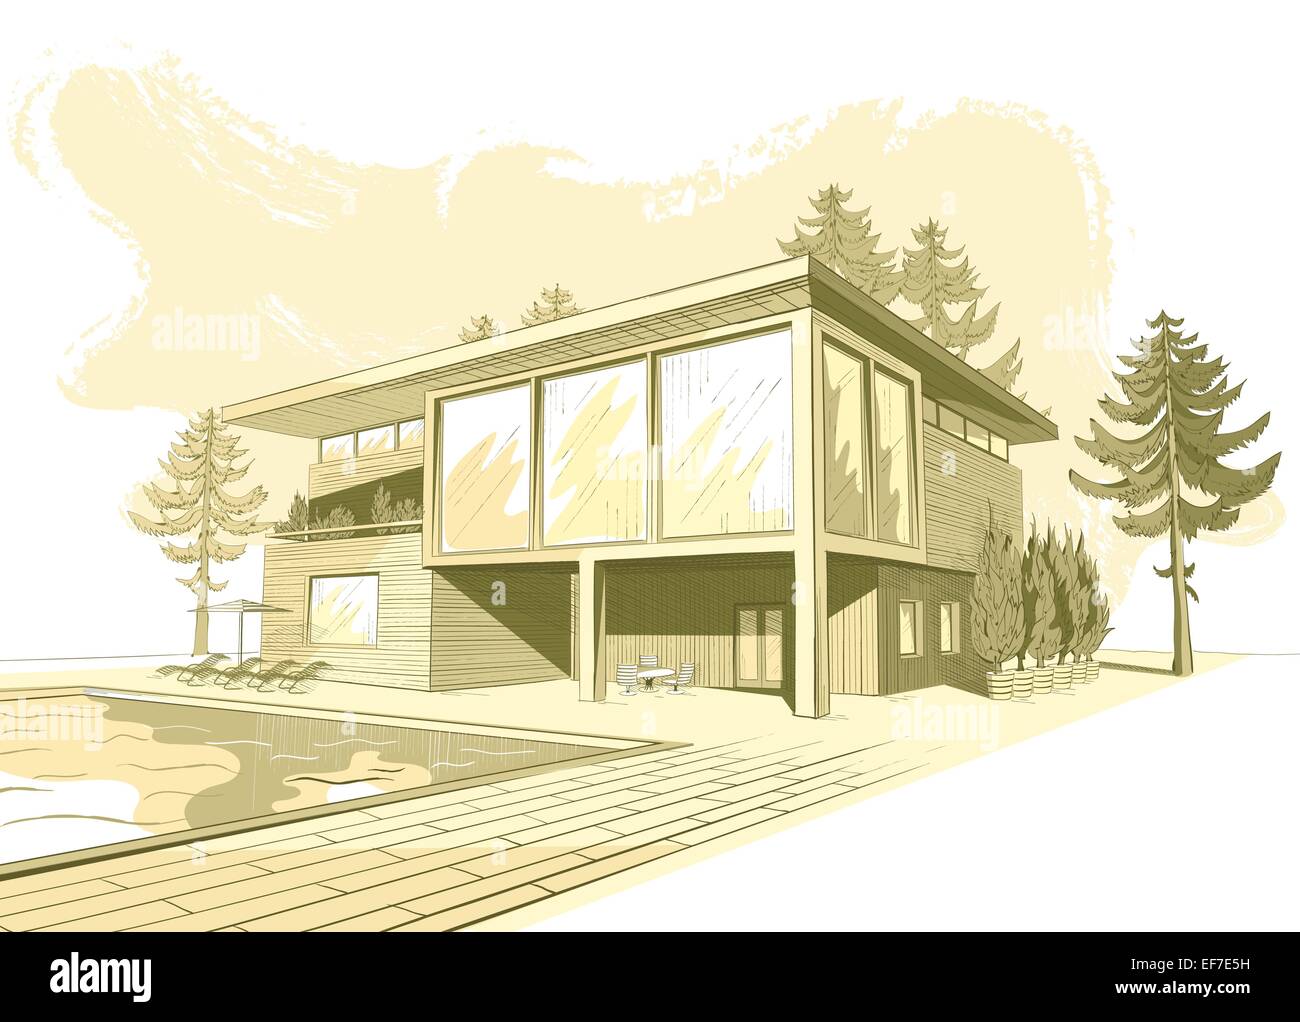 Croquis de sépia vecteur de banlieue moderne maison en bois avec piscine et chaises longues Illustration de Vecteur